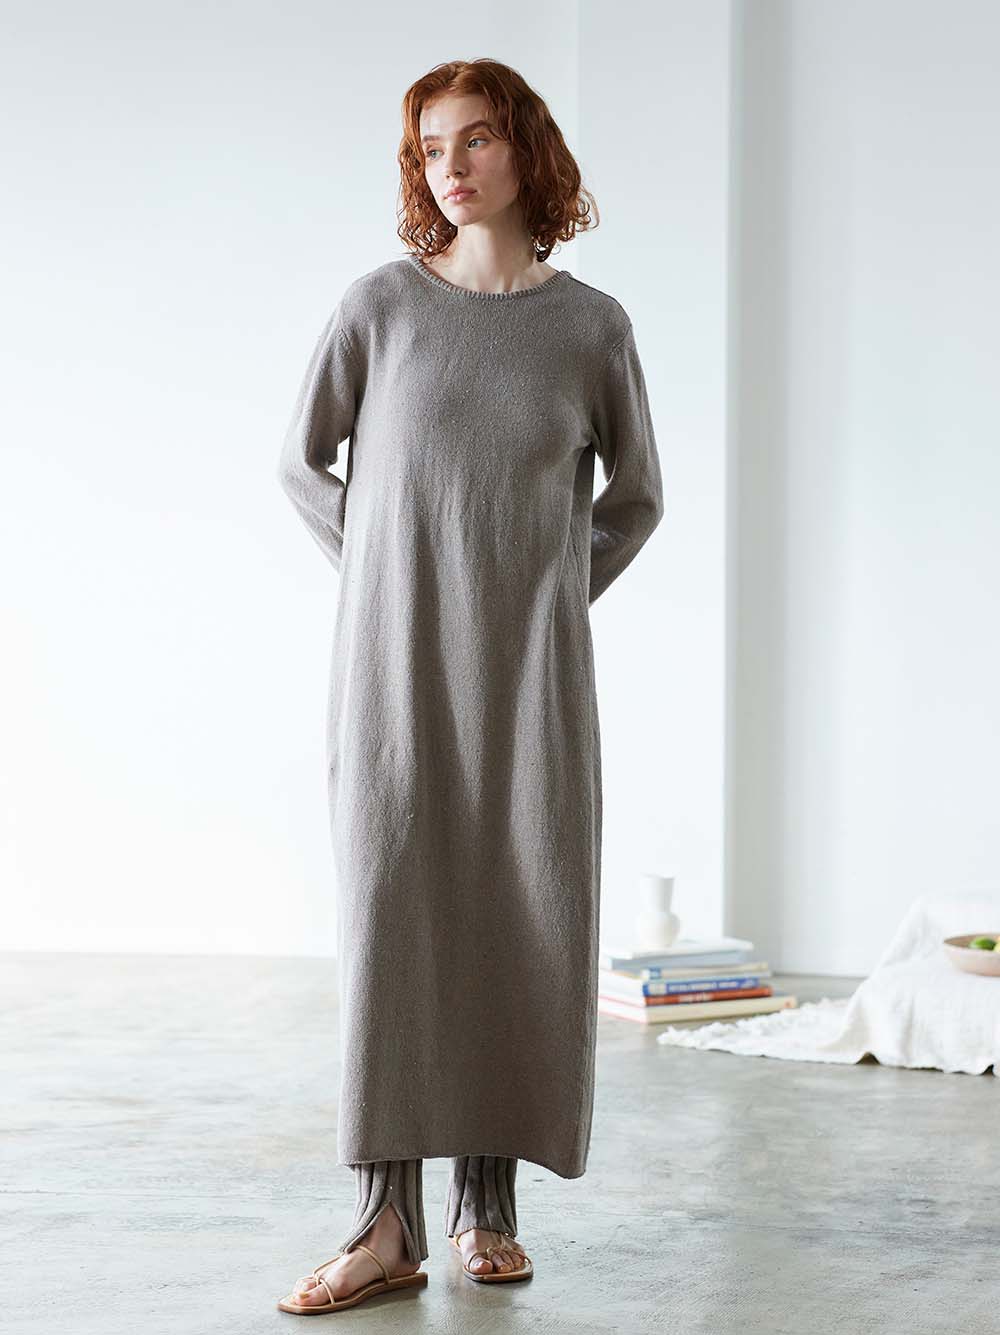 Recycle denim knit 2way dress